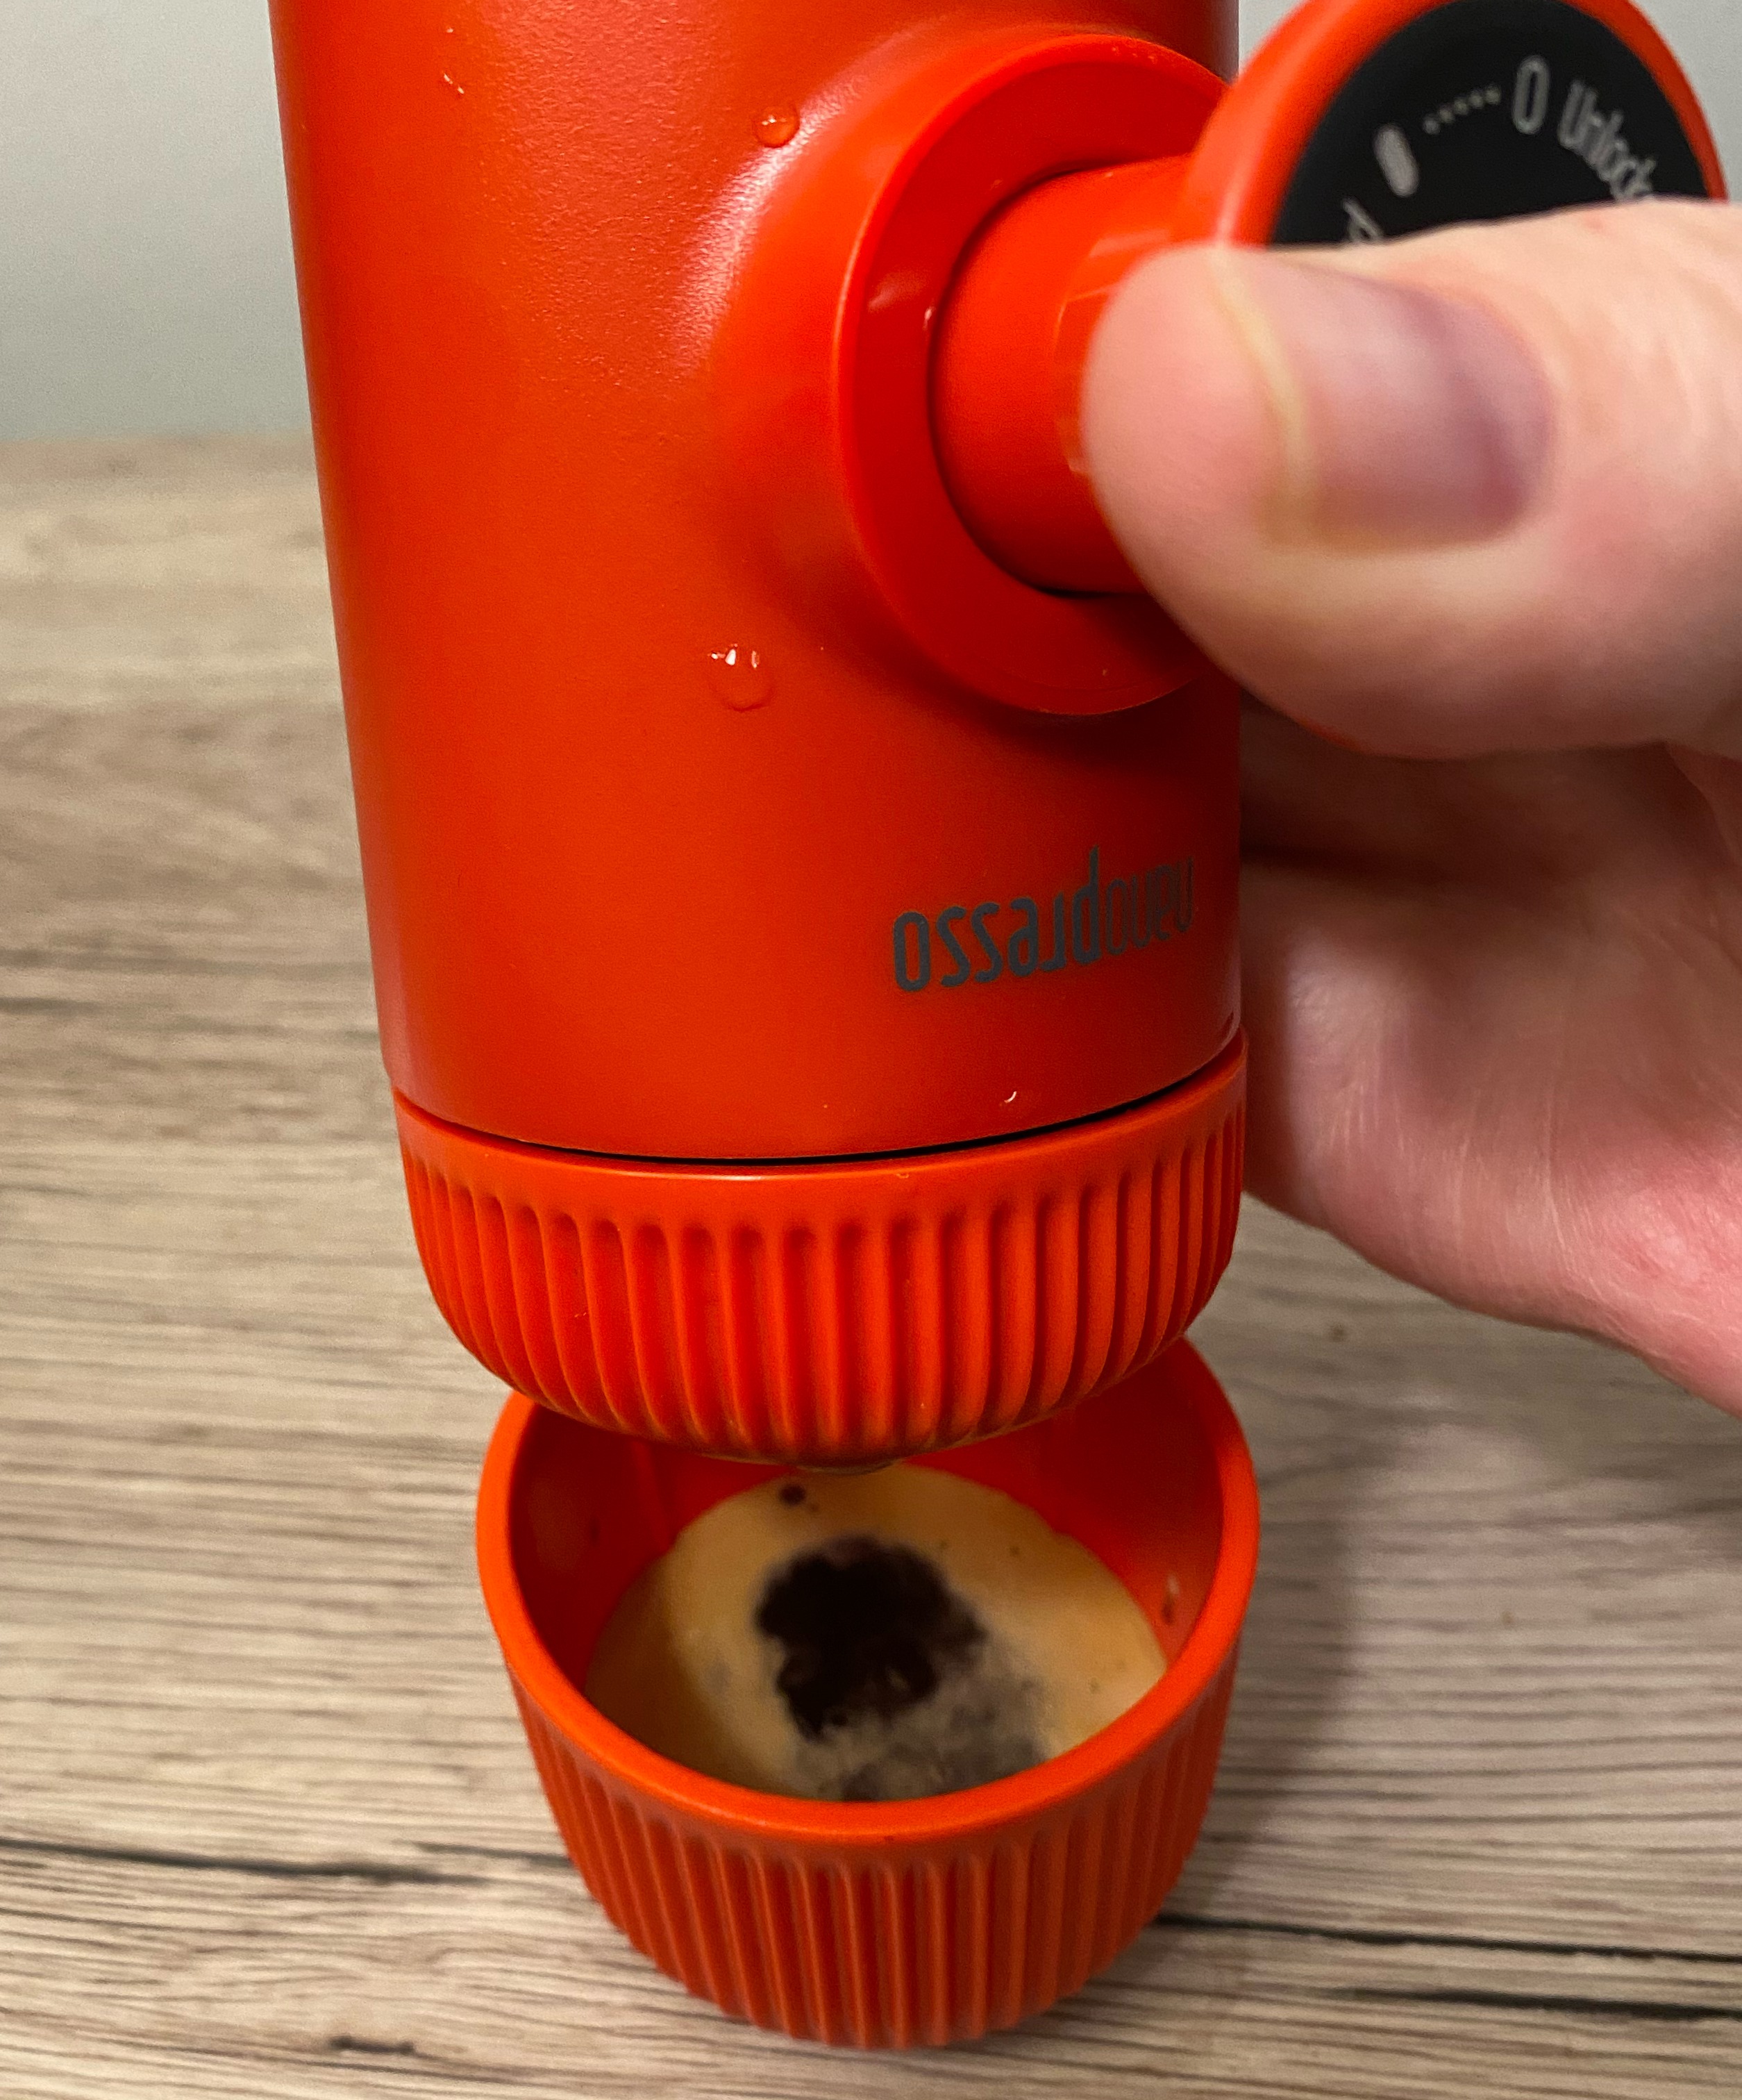 Wacaco Nanopresso built-in espresso coffee cup